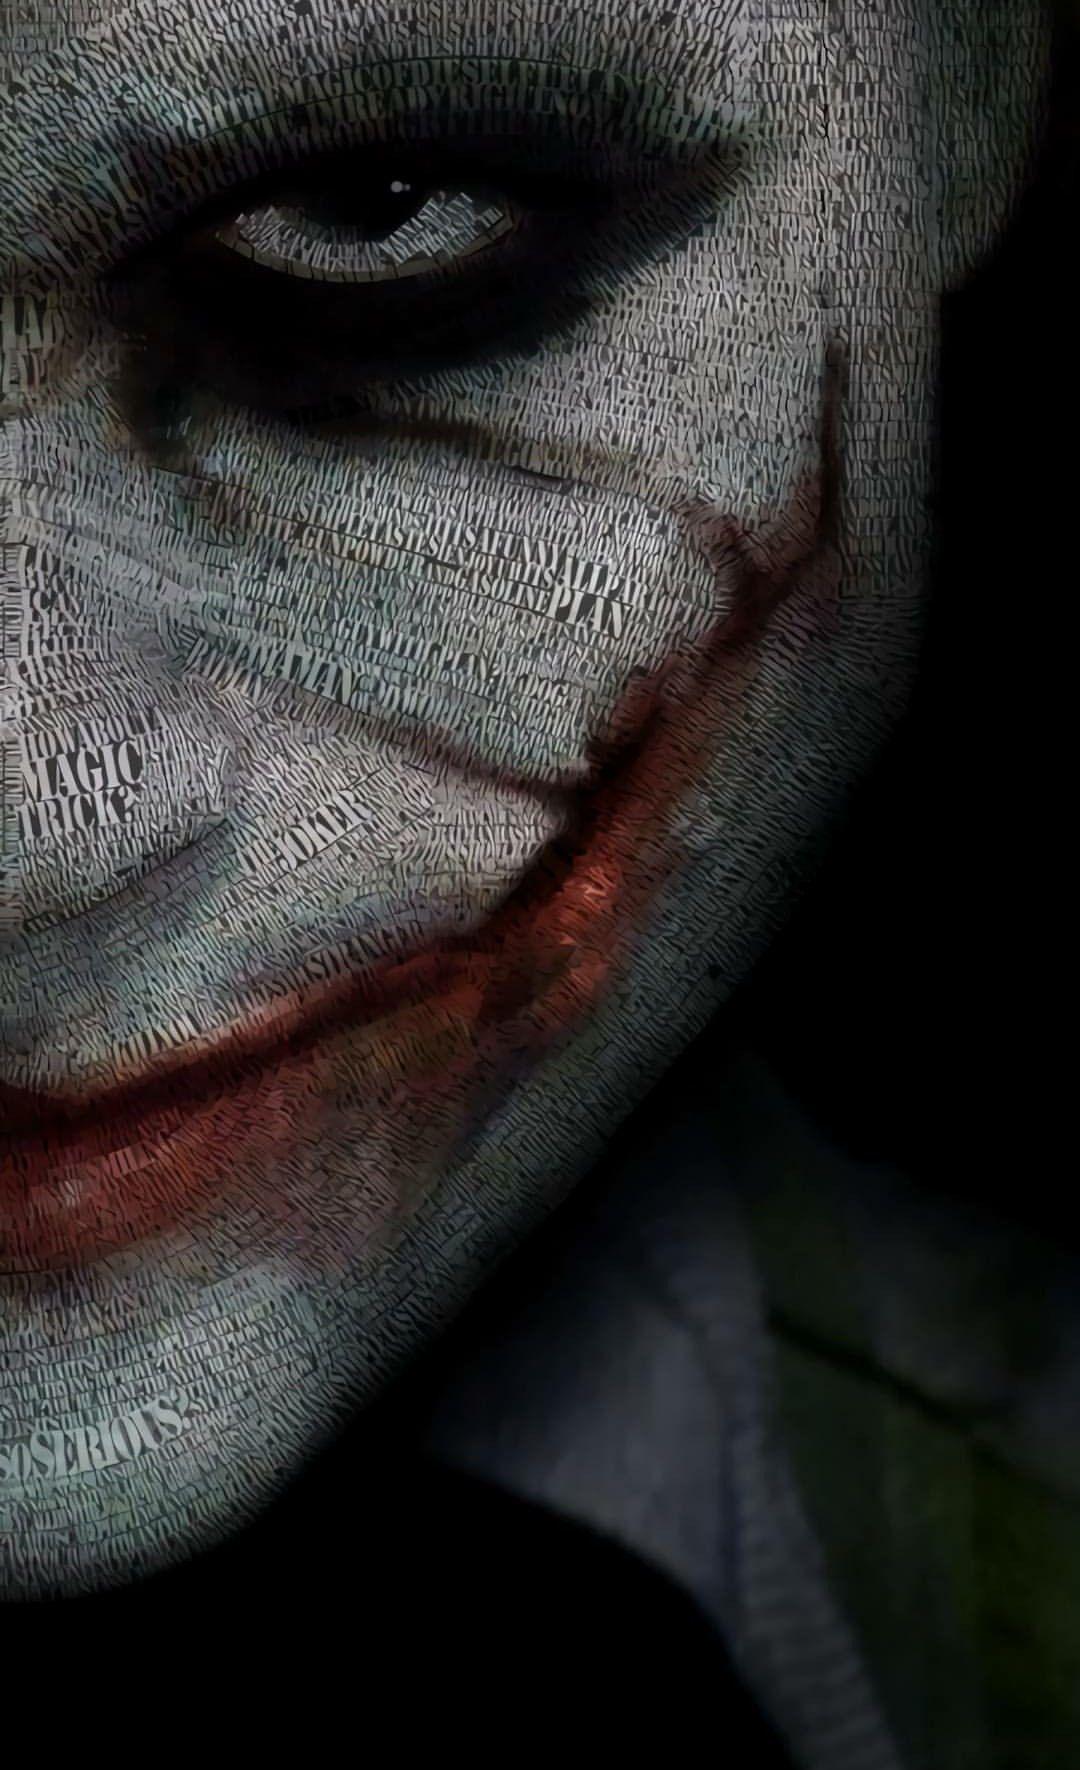 Joker Half face. Joker wallpaper, Joker iphone wallpaper